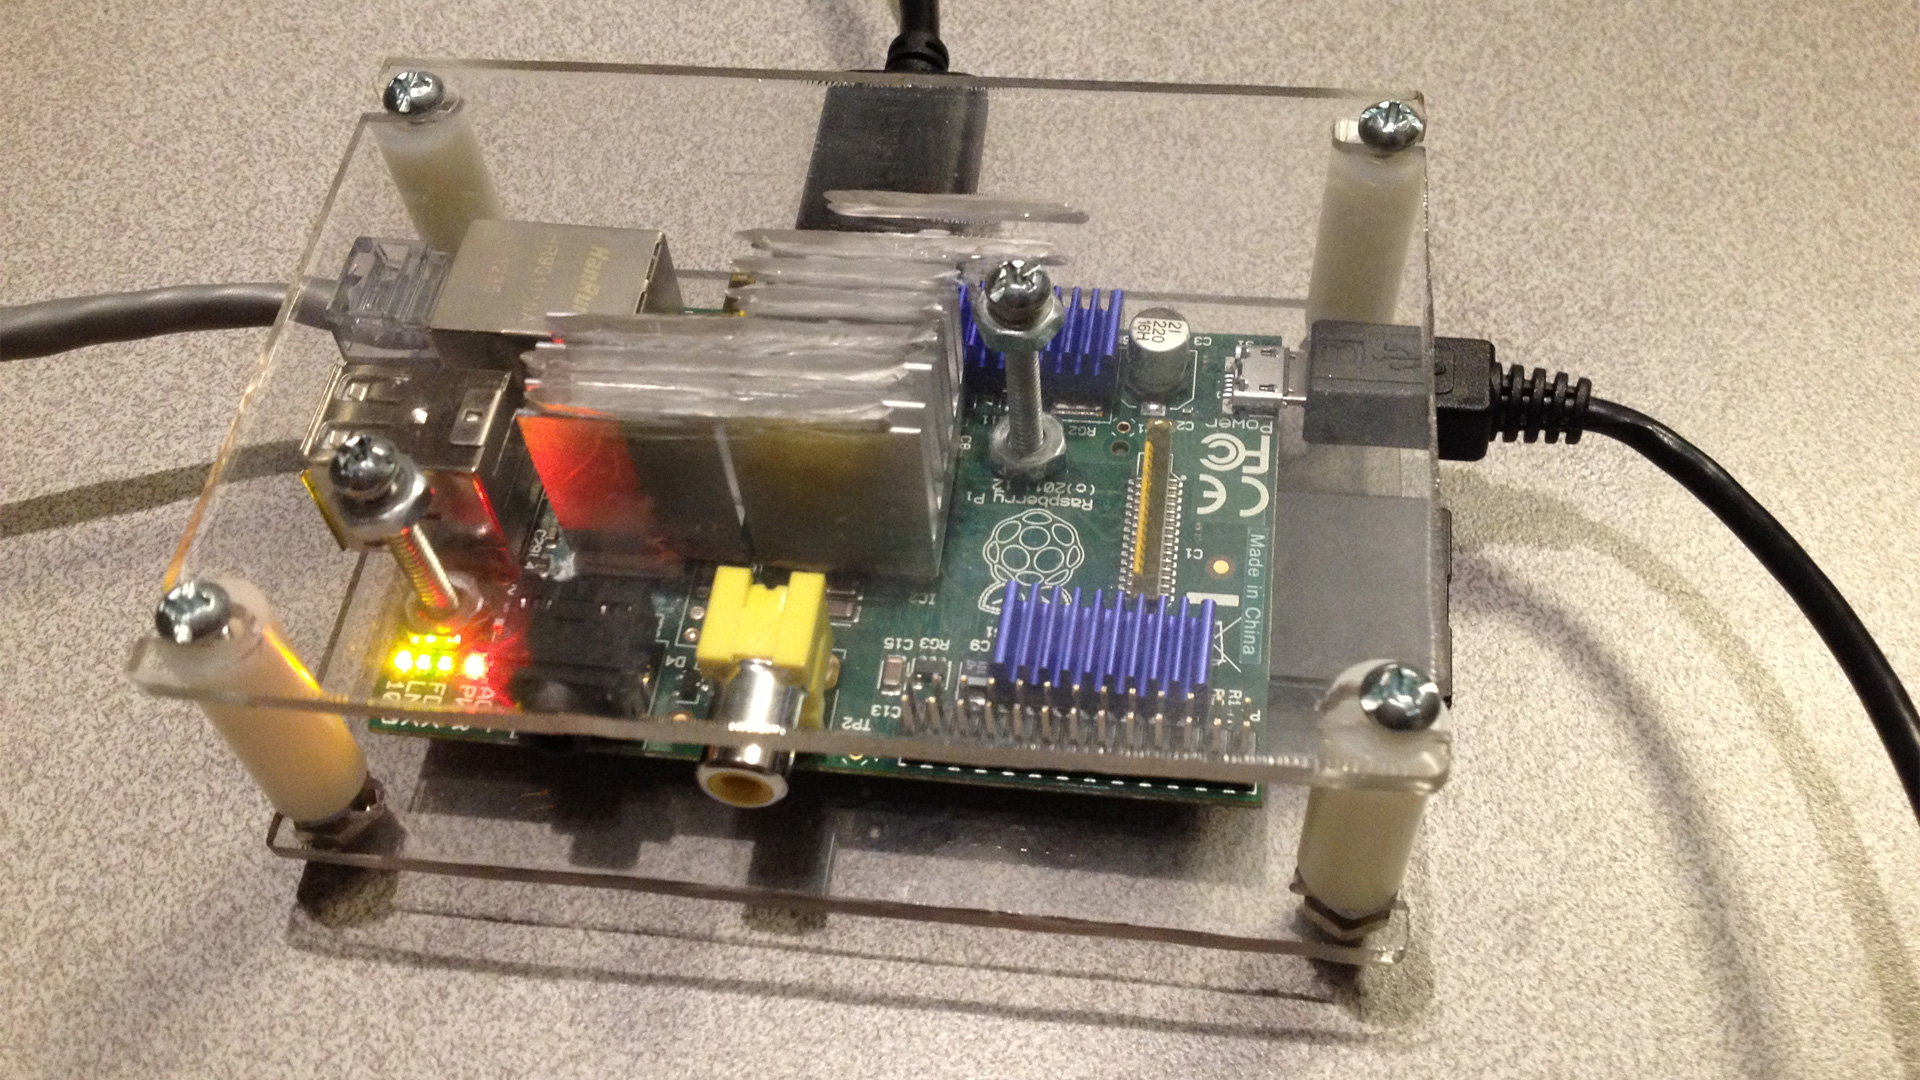 S-Config's Raspberry Pi system